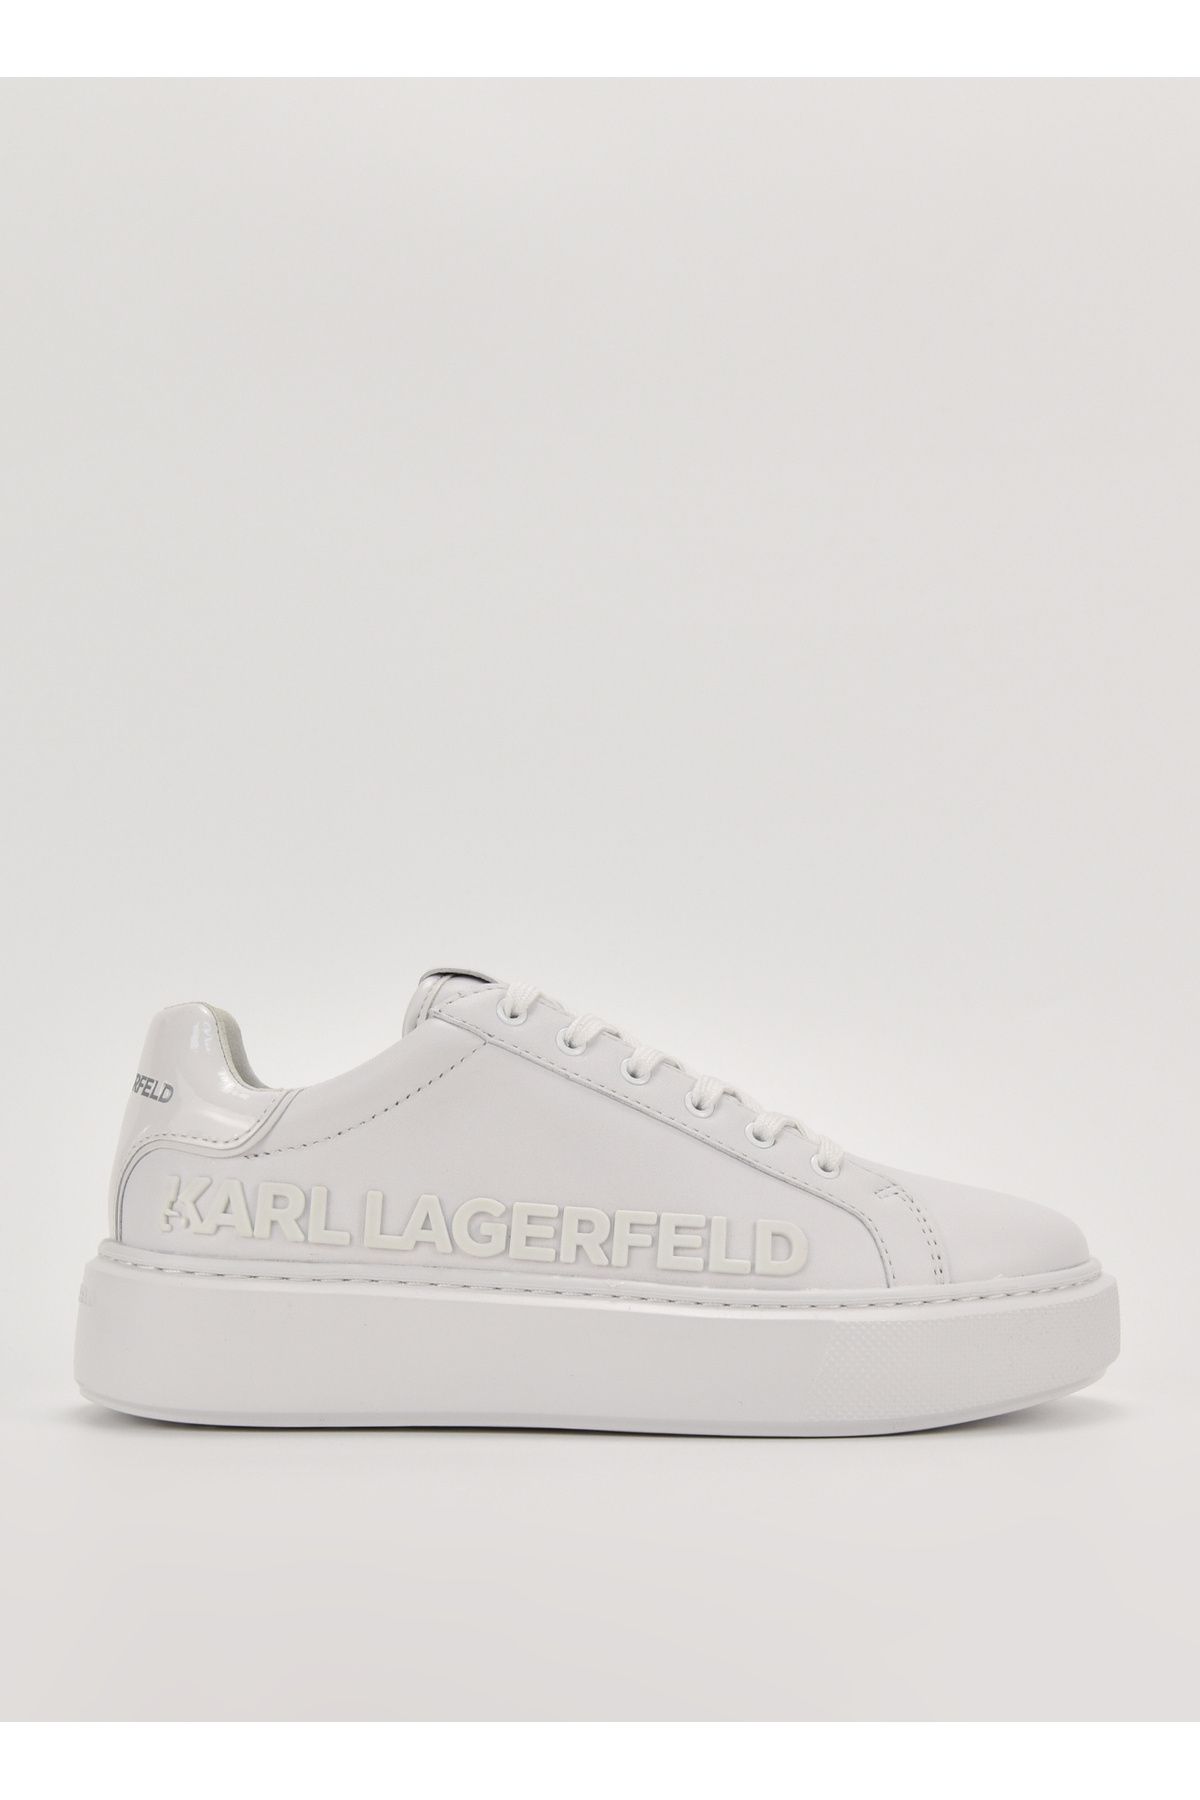 Karl Lagerfeld Beyaz Kadın Sneaker KL62210